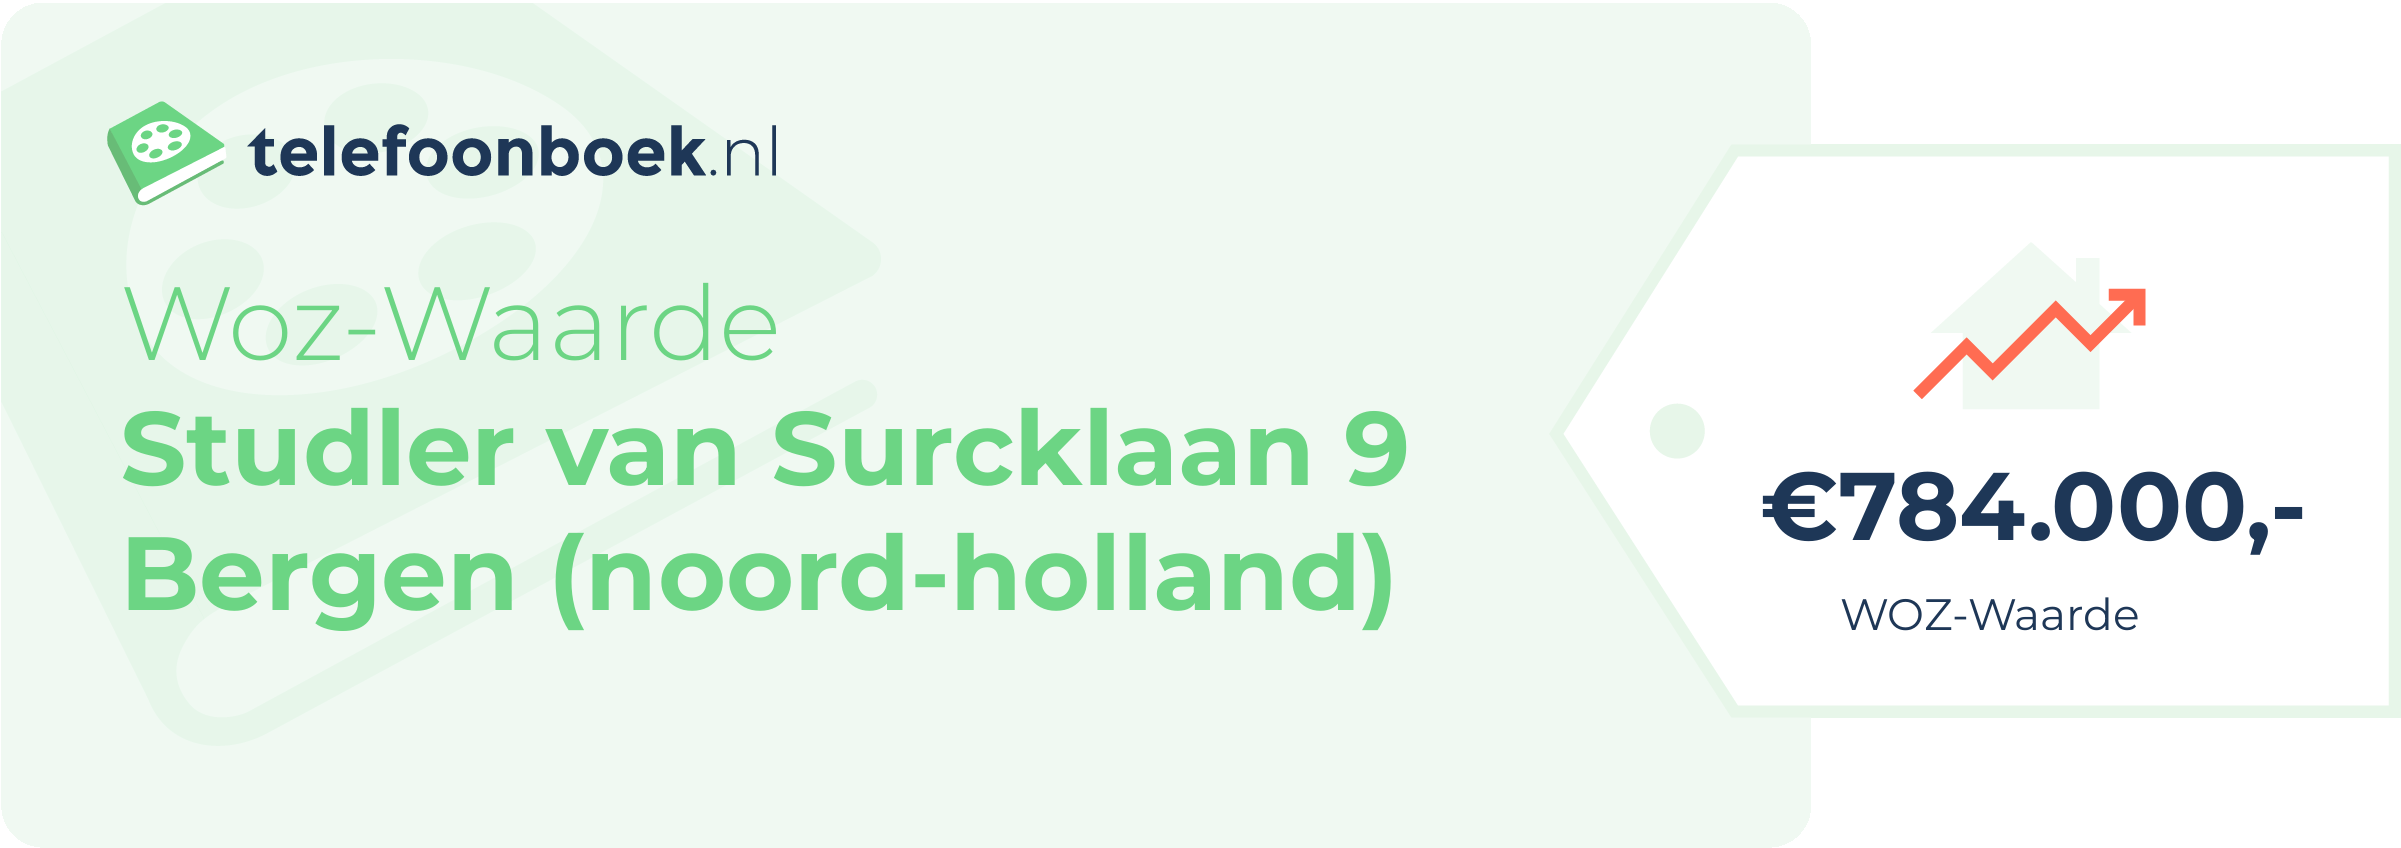 WOZ-waarde Studler Van Surcklaan 9 Bergen (Noord-Holland)